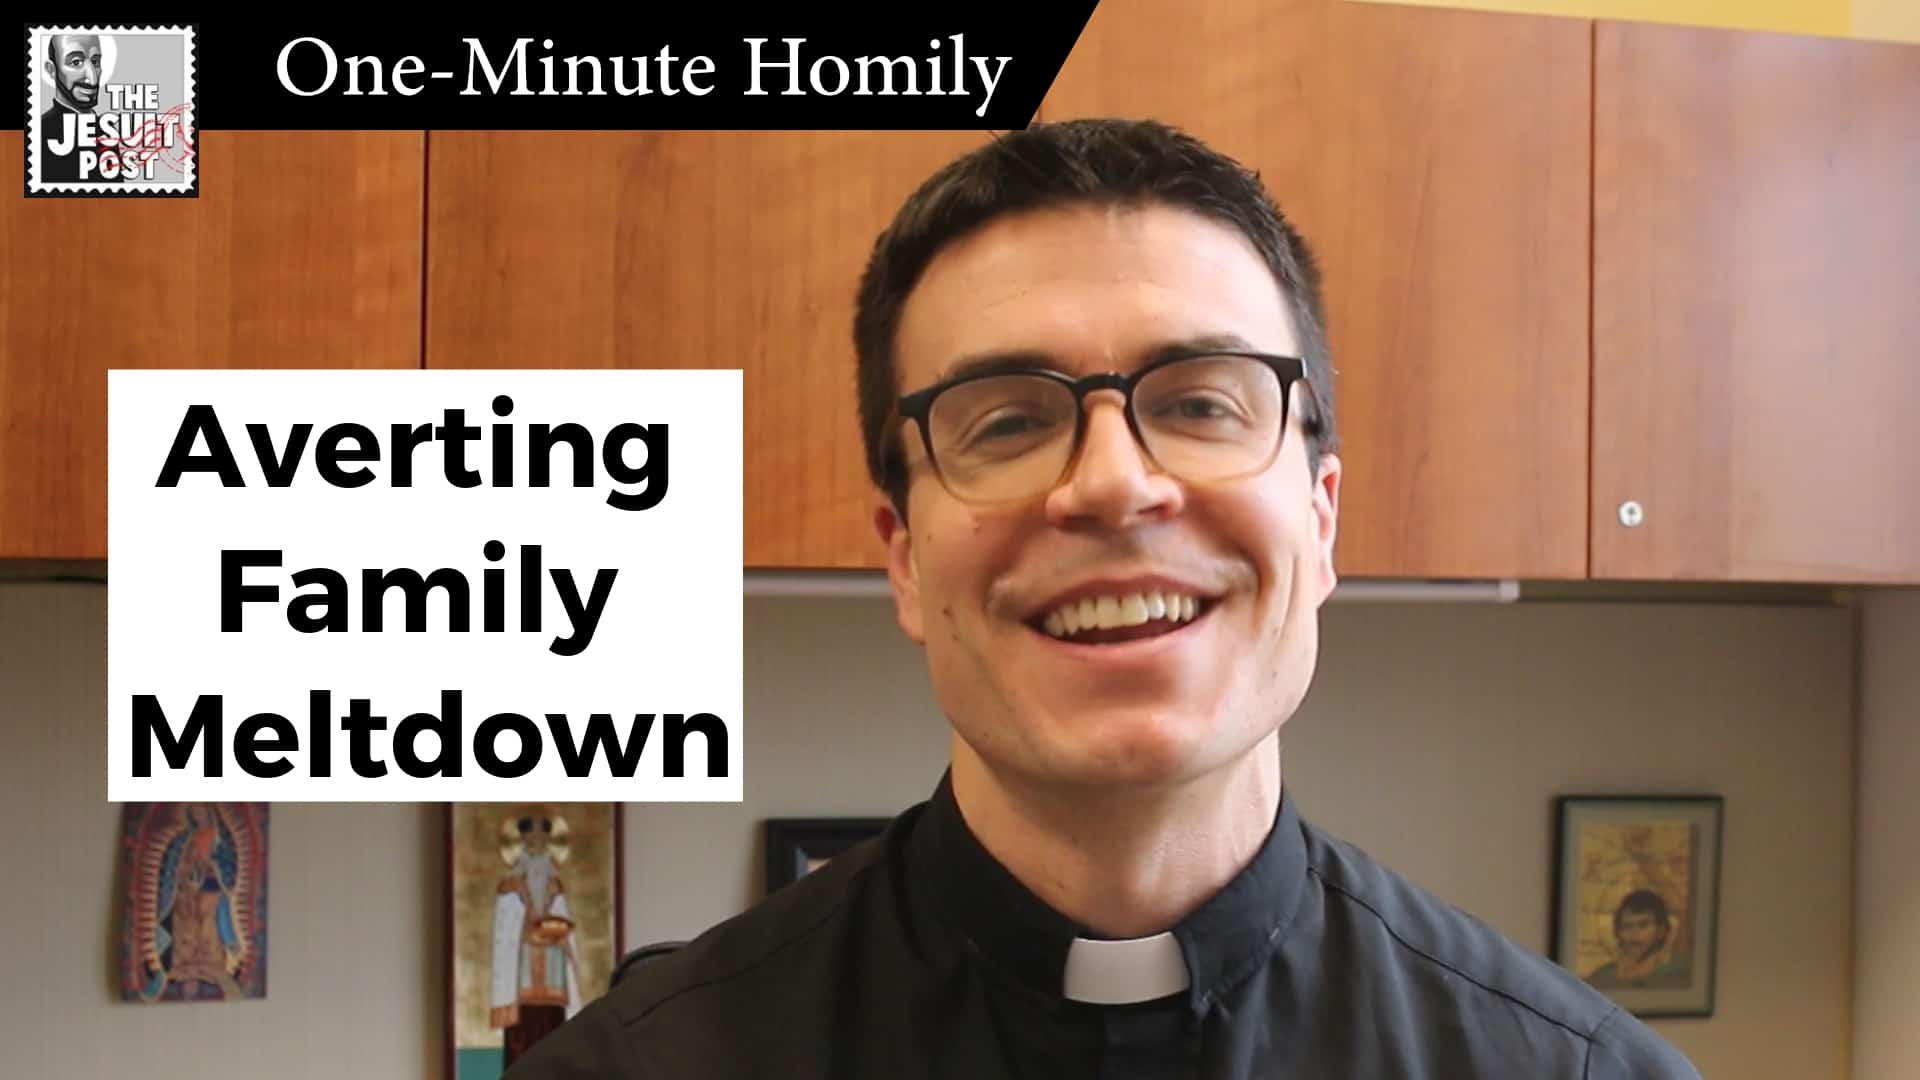 One-Minute Homily: “Averting Family Meltdown”